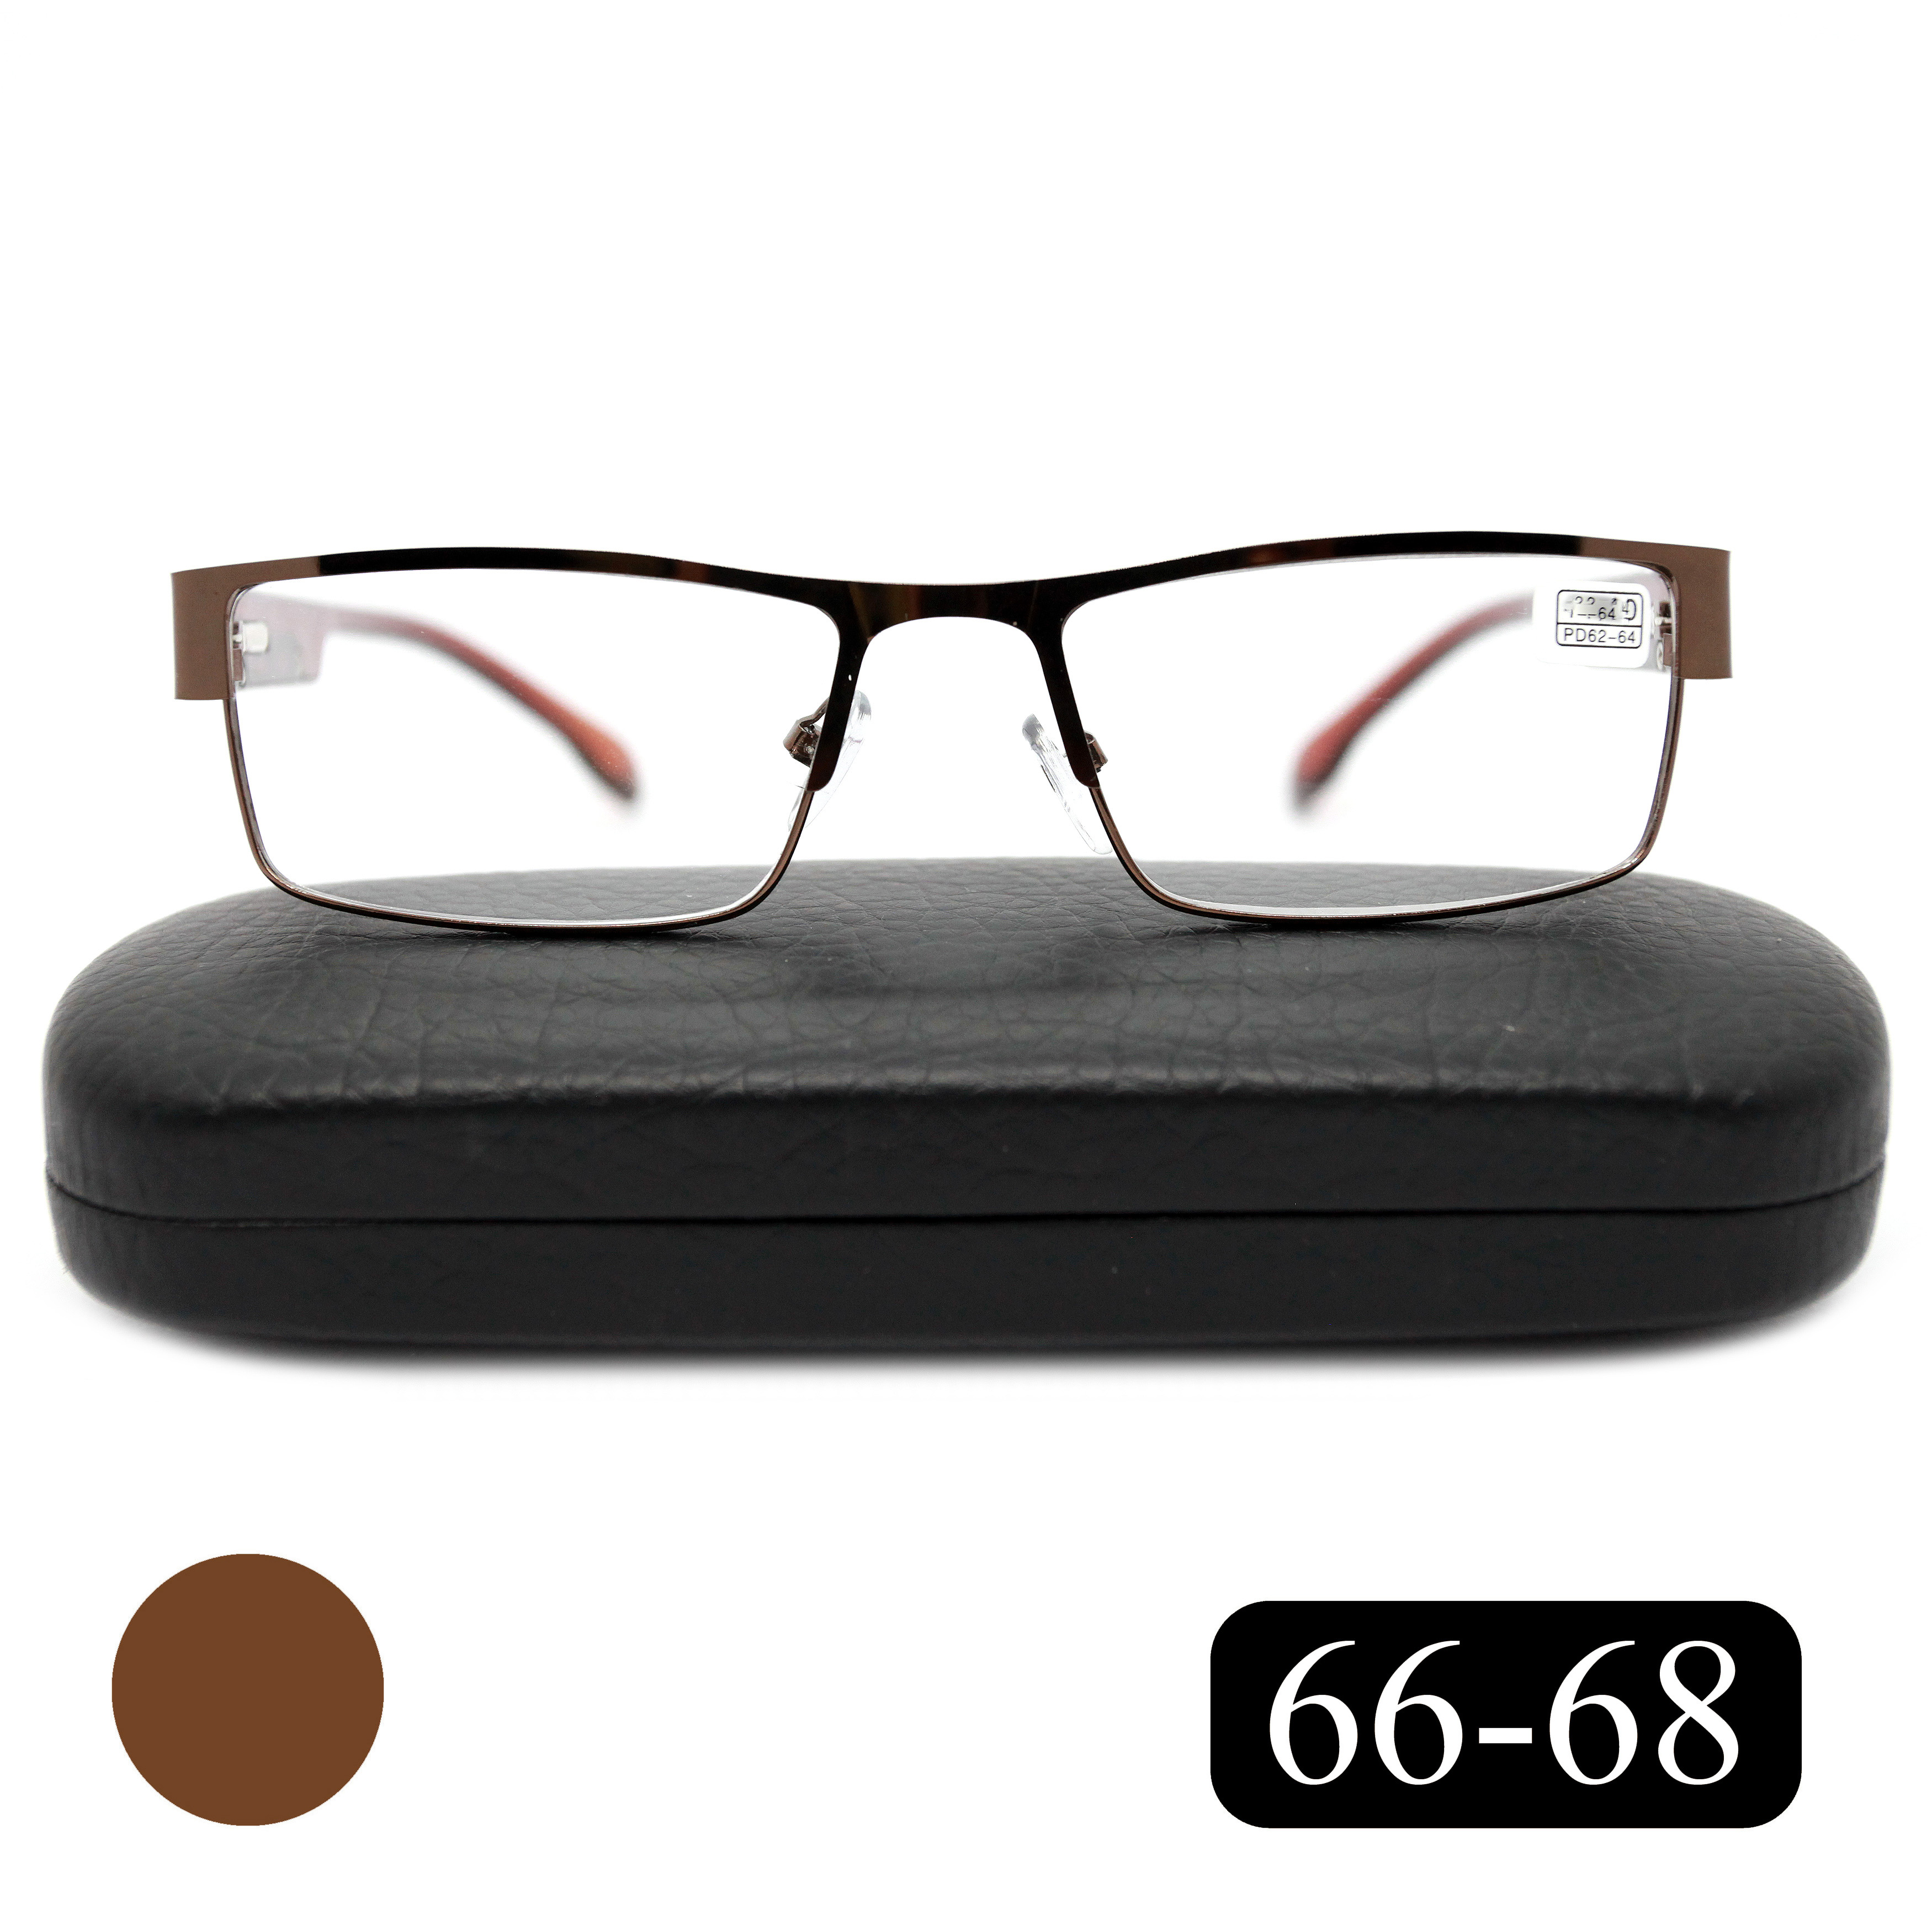 Готовые очки для чтения MOCT 019  1,25 с футляром, коричневого цвета, размер центральной зоны 66-68 мм.